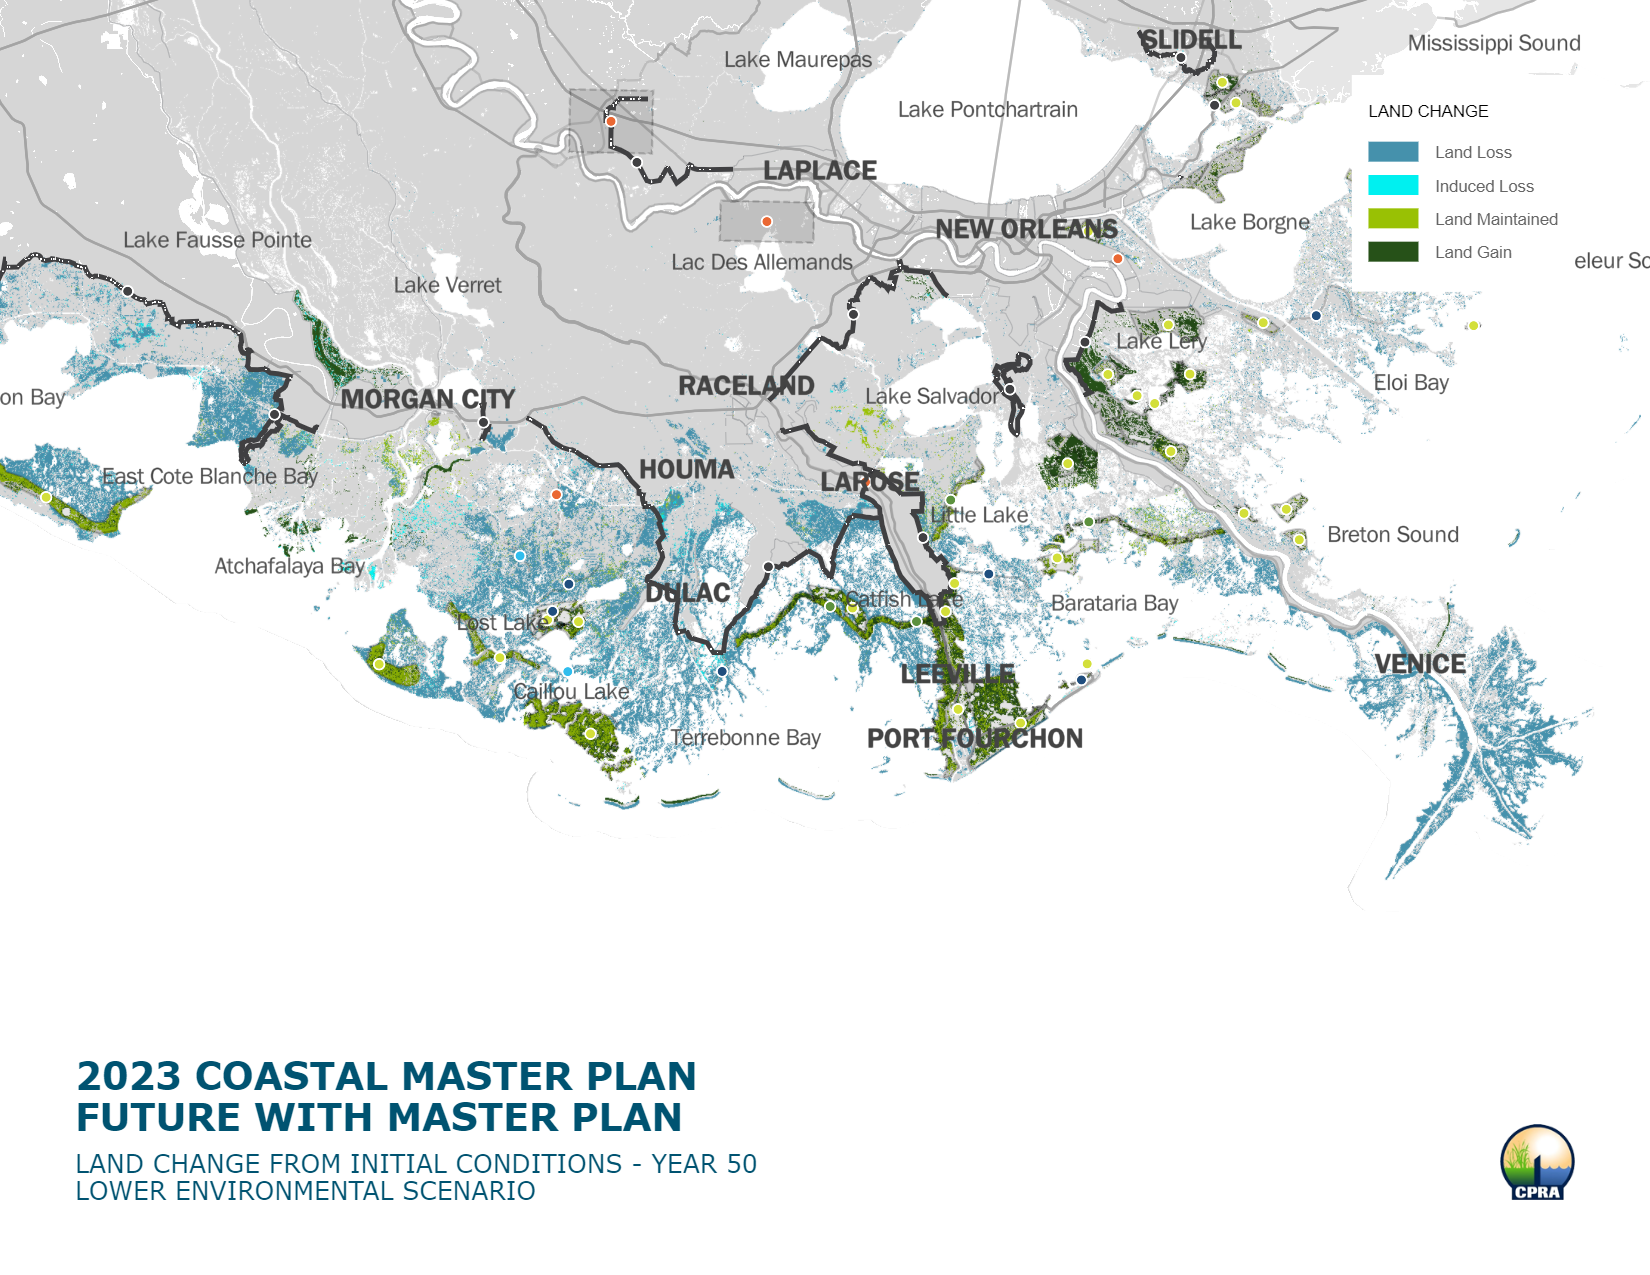 Land Loss with Coastal Master Plan